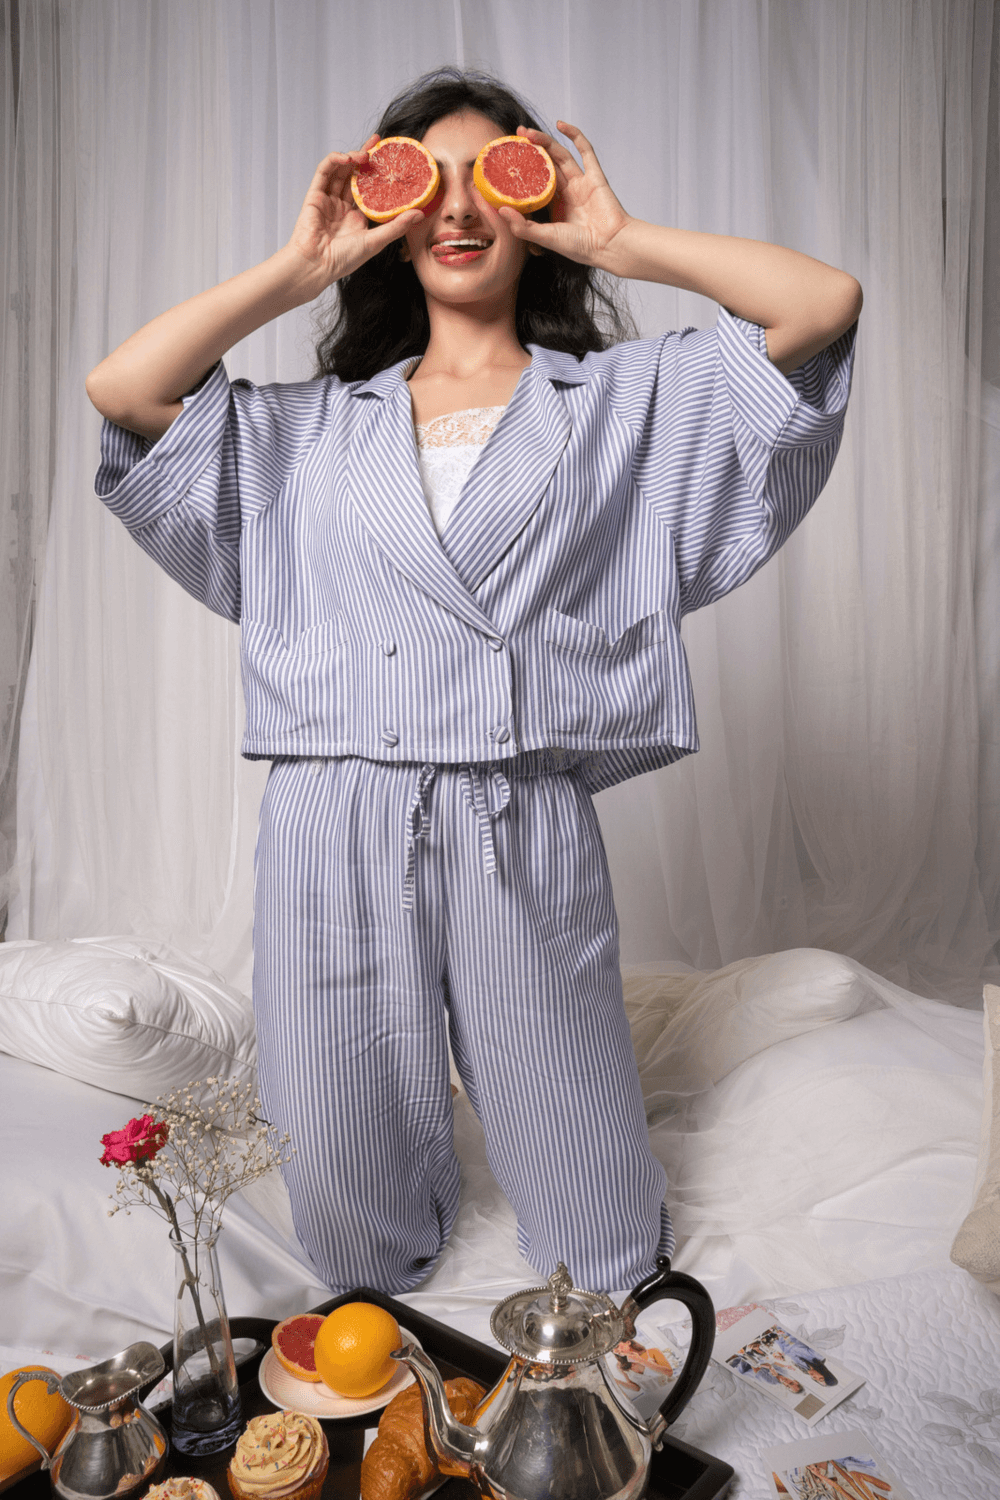 Ono, Pyjama Suit